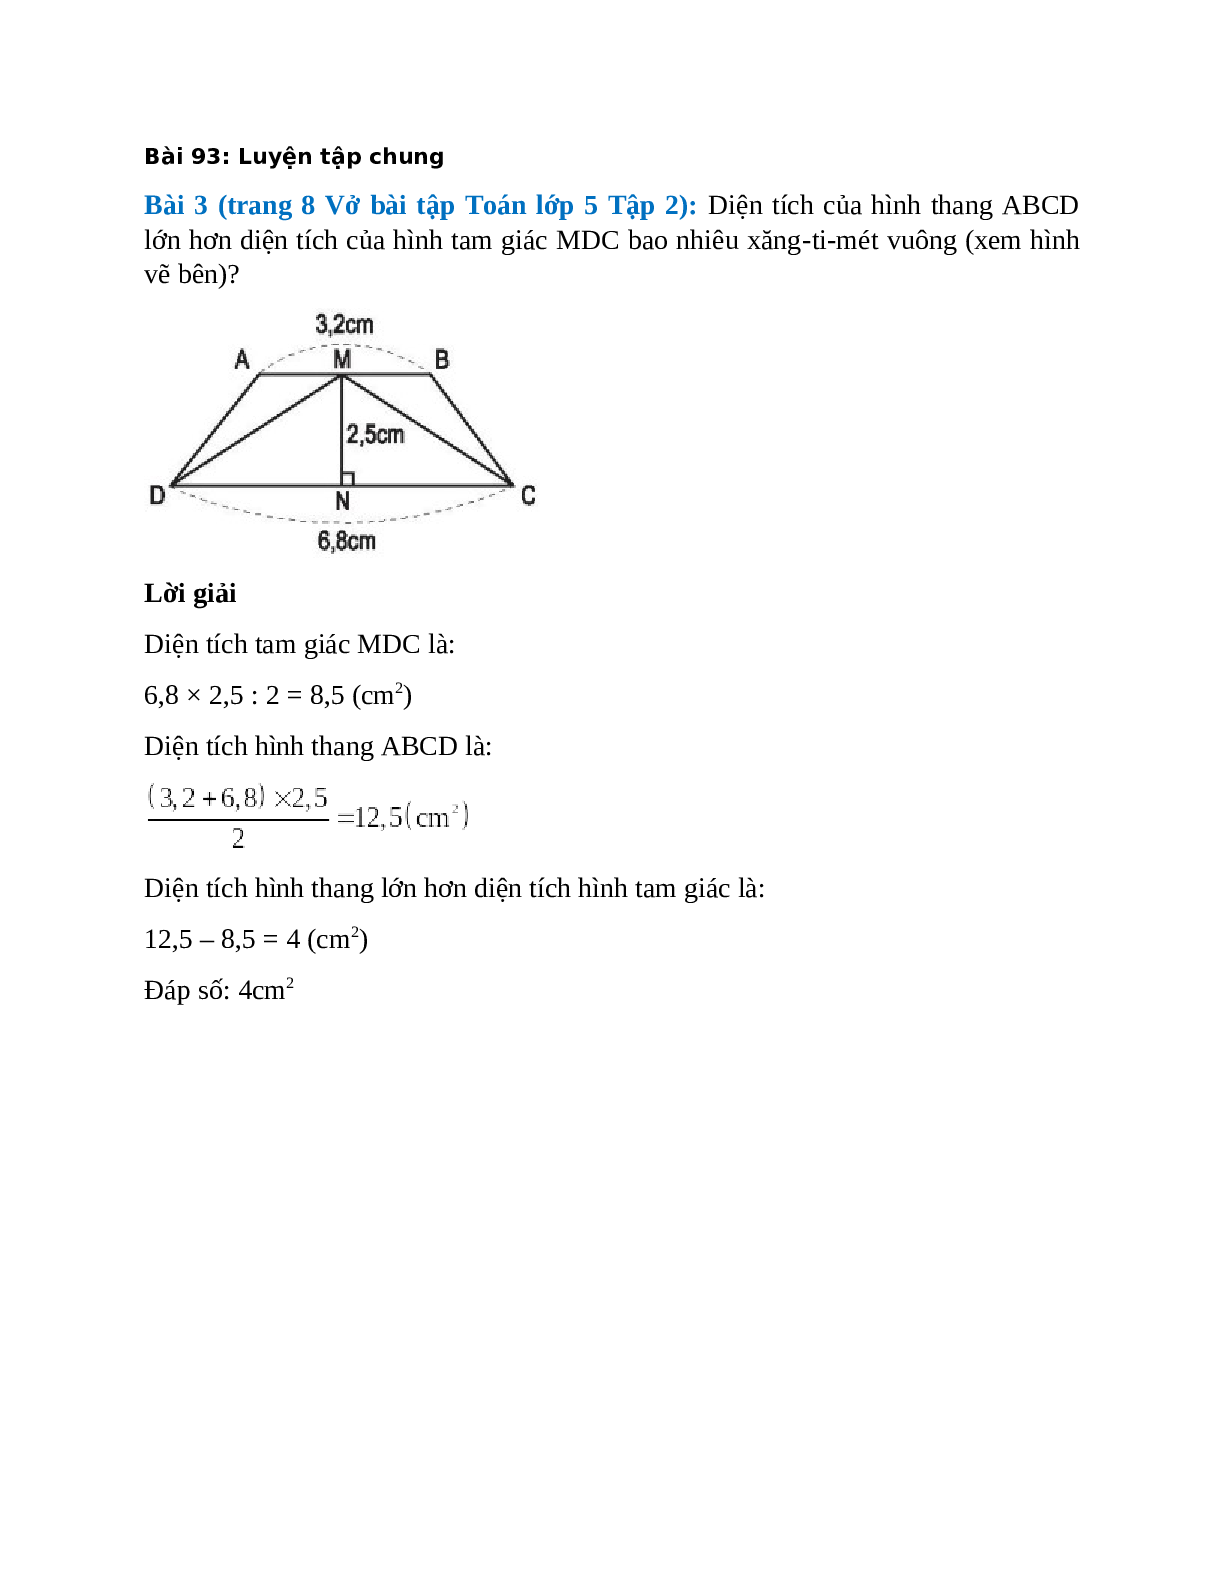 Diện tích của hình thang ABCD lớn hơn diện tích của hình tam giác MDC (trang 1)